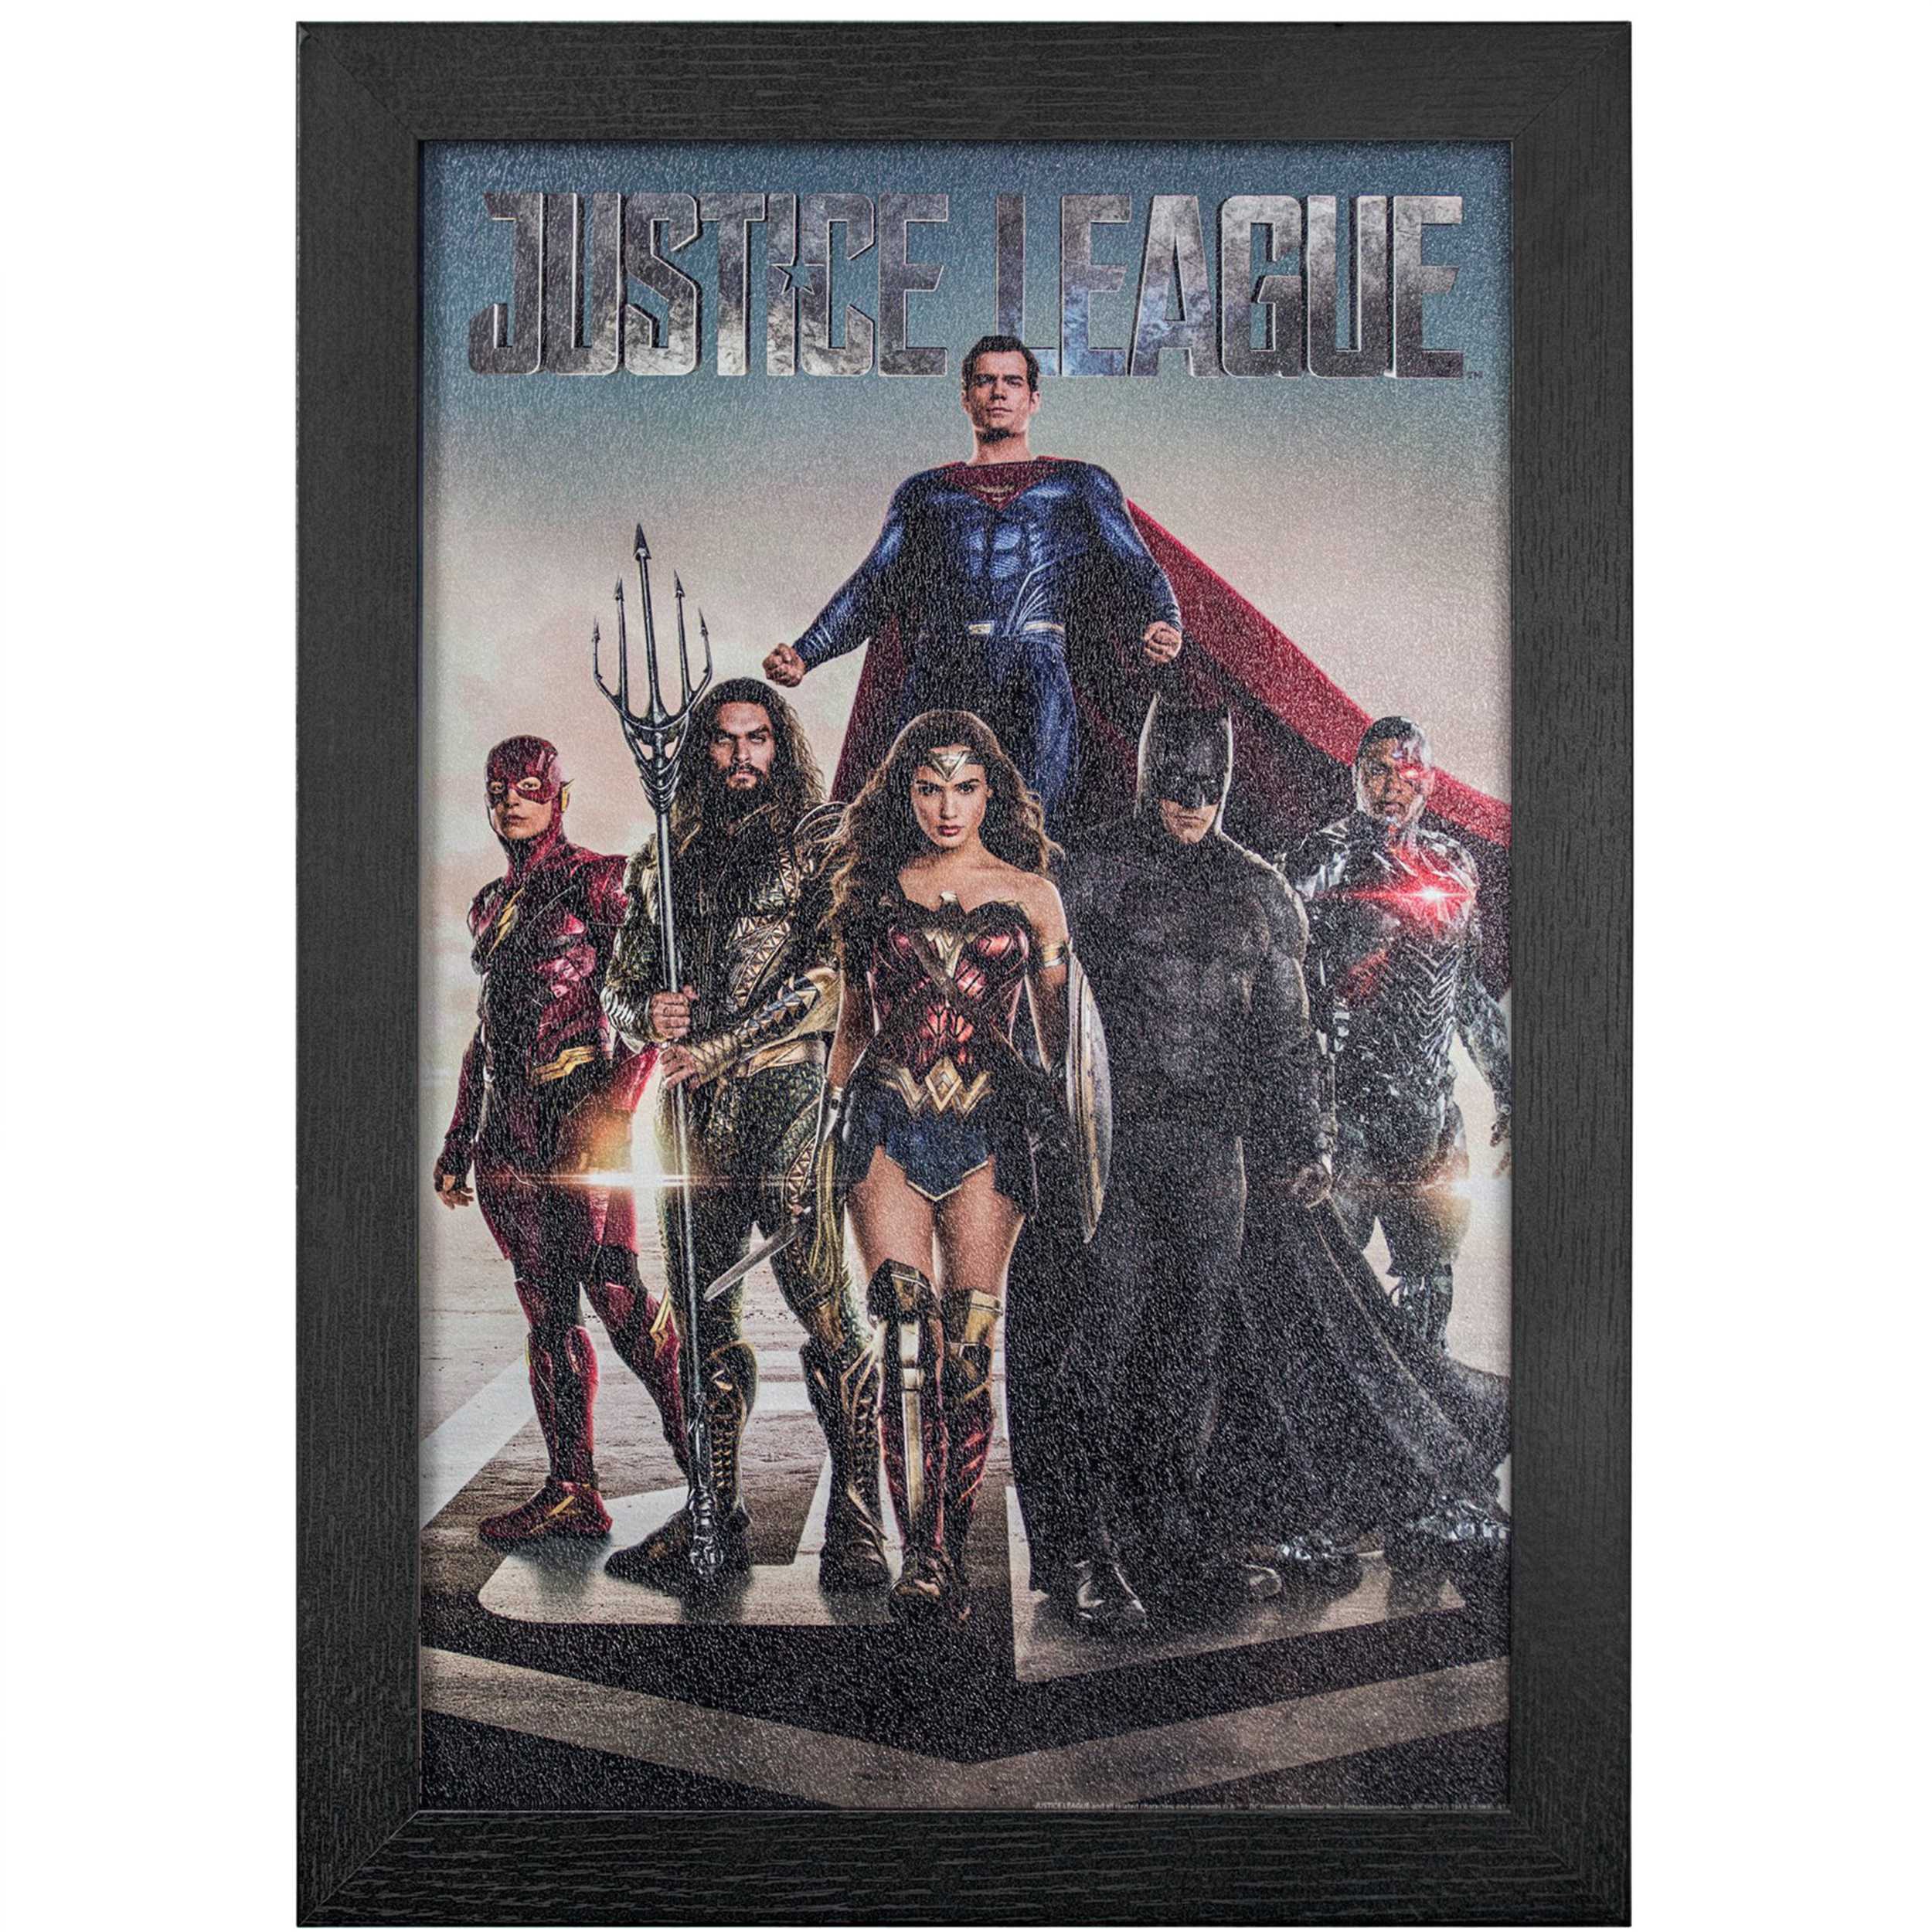 Licensed Framed Art - Justice League